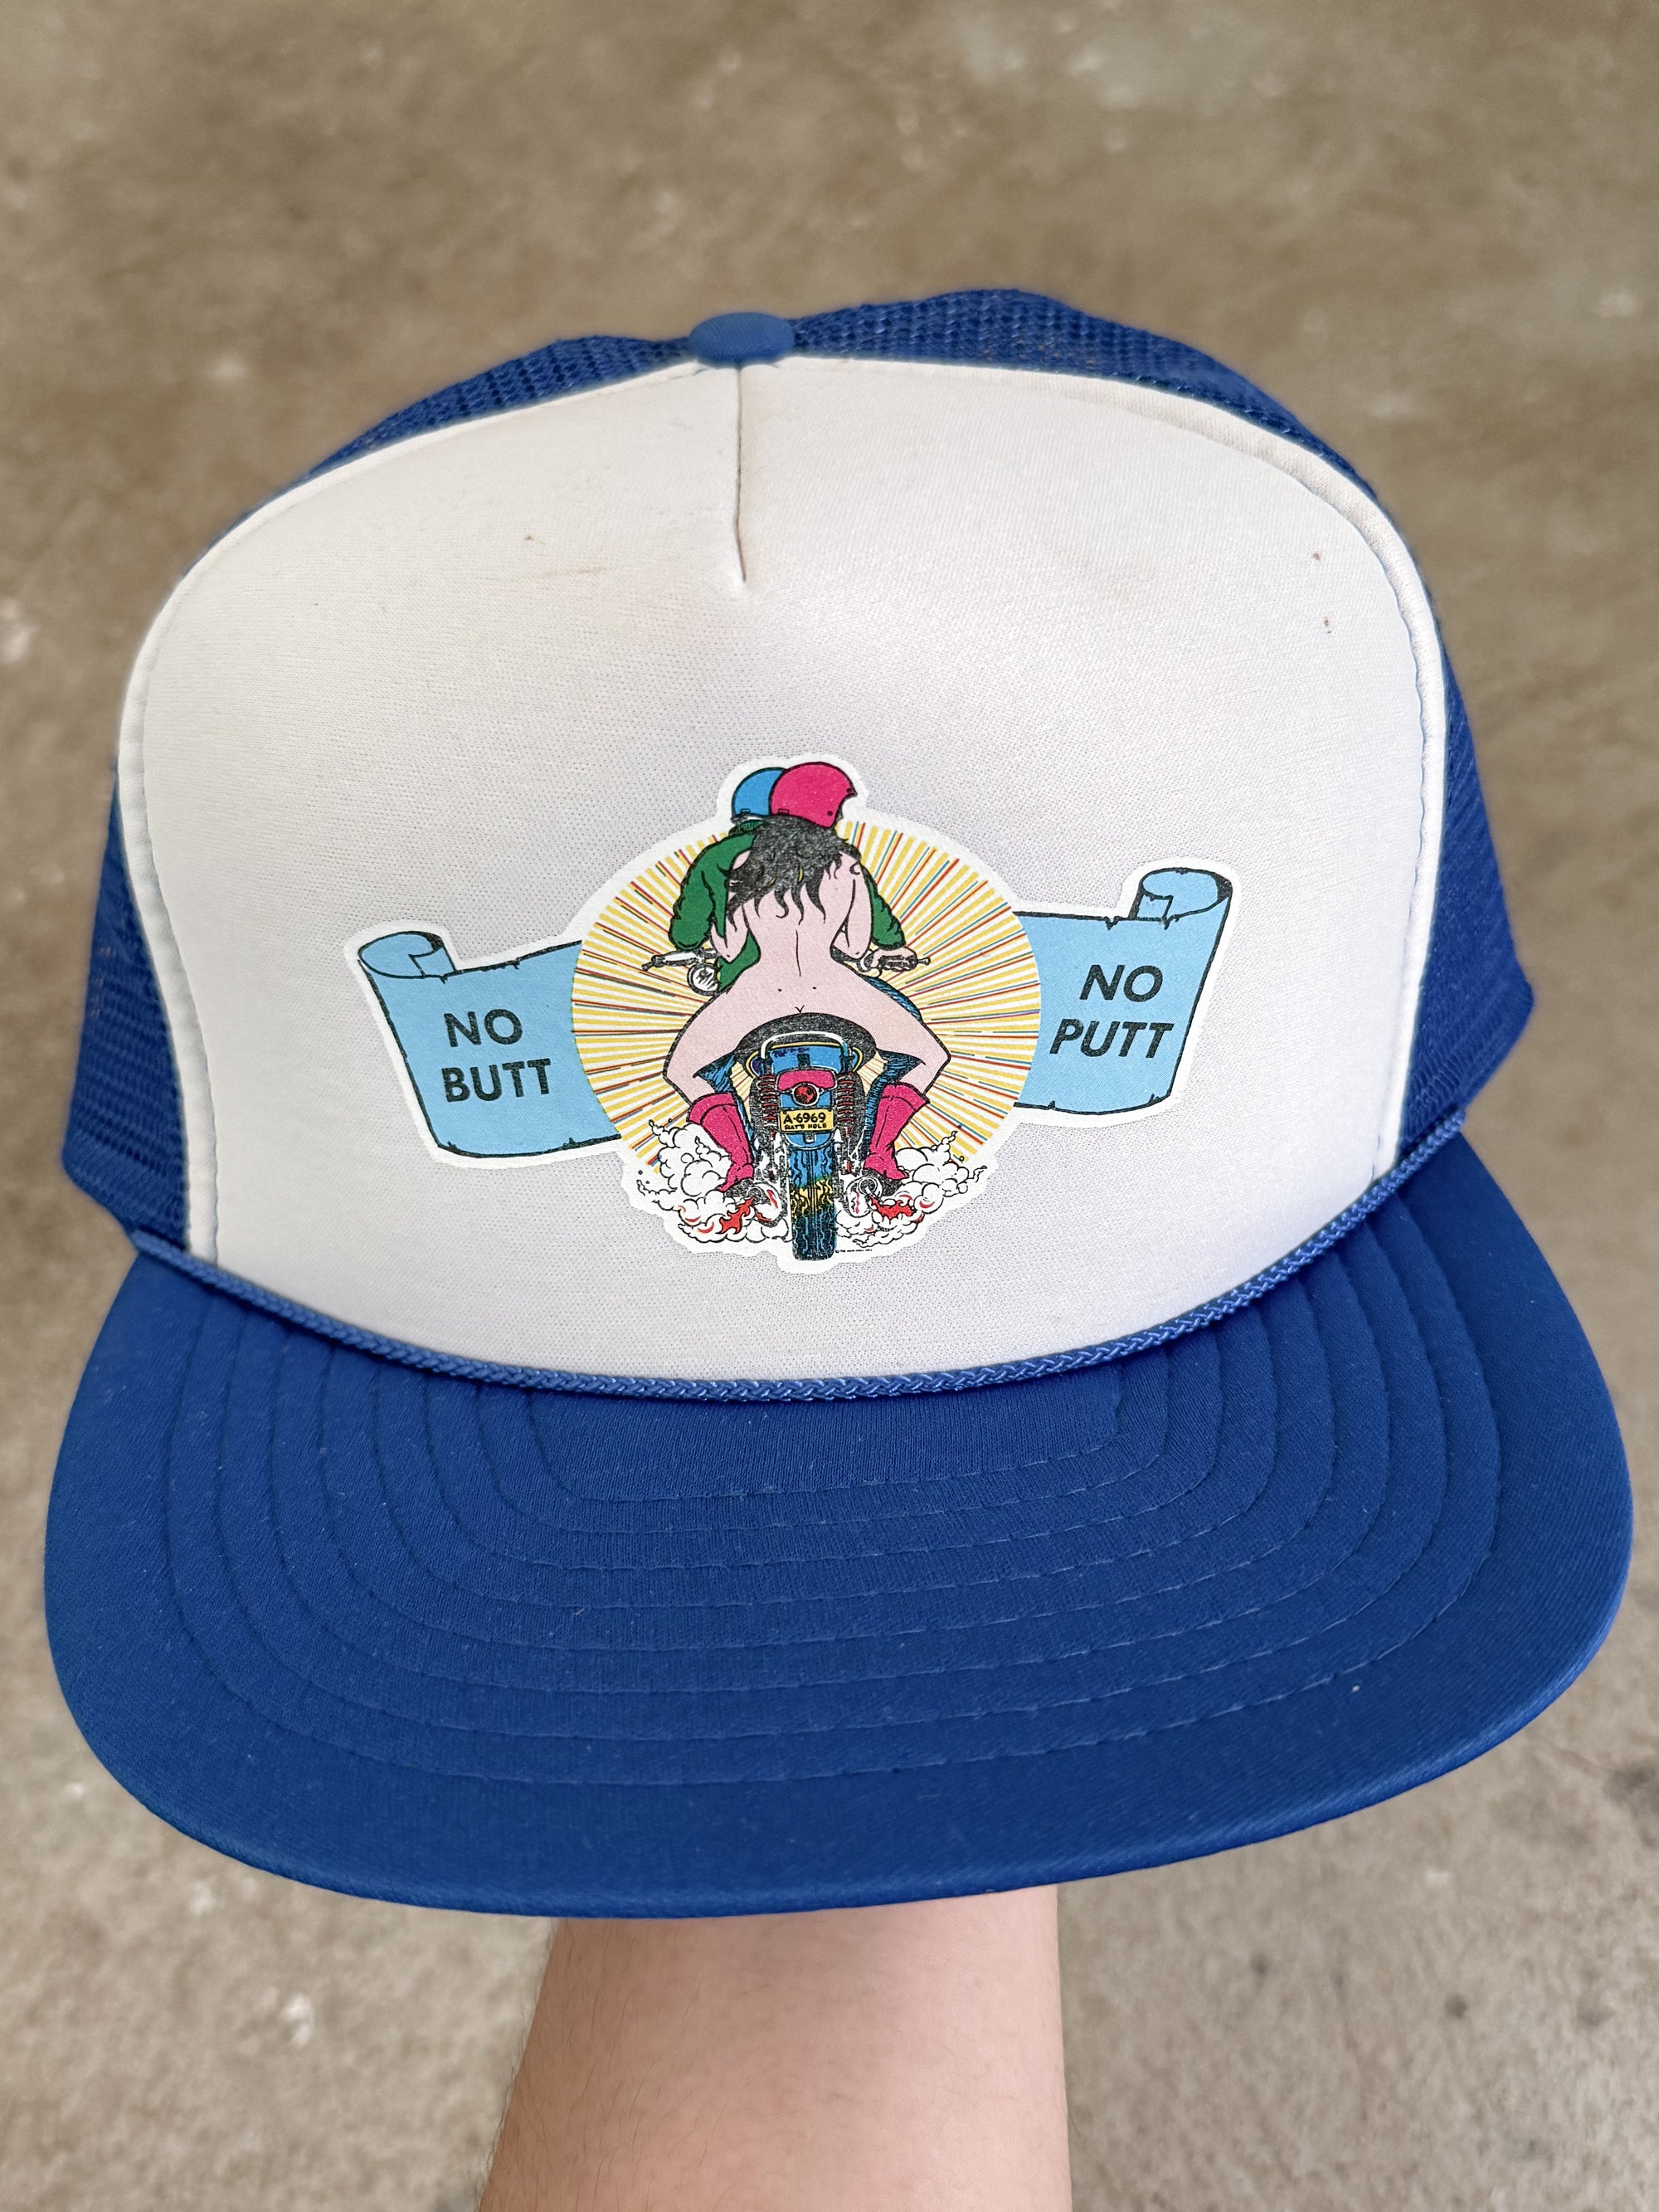 1990s "No Butt No Putt" Trucker Hat